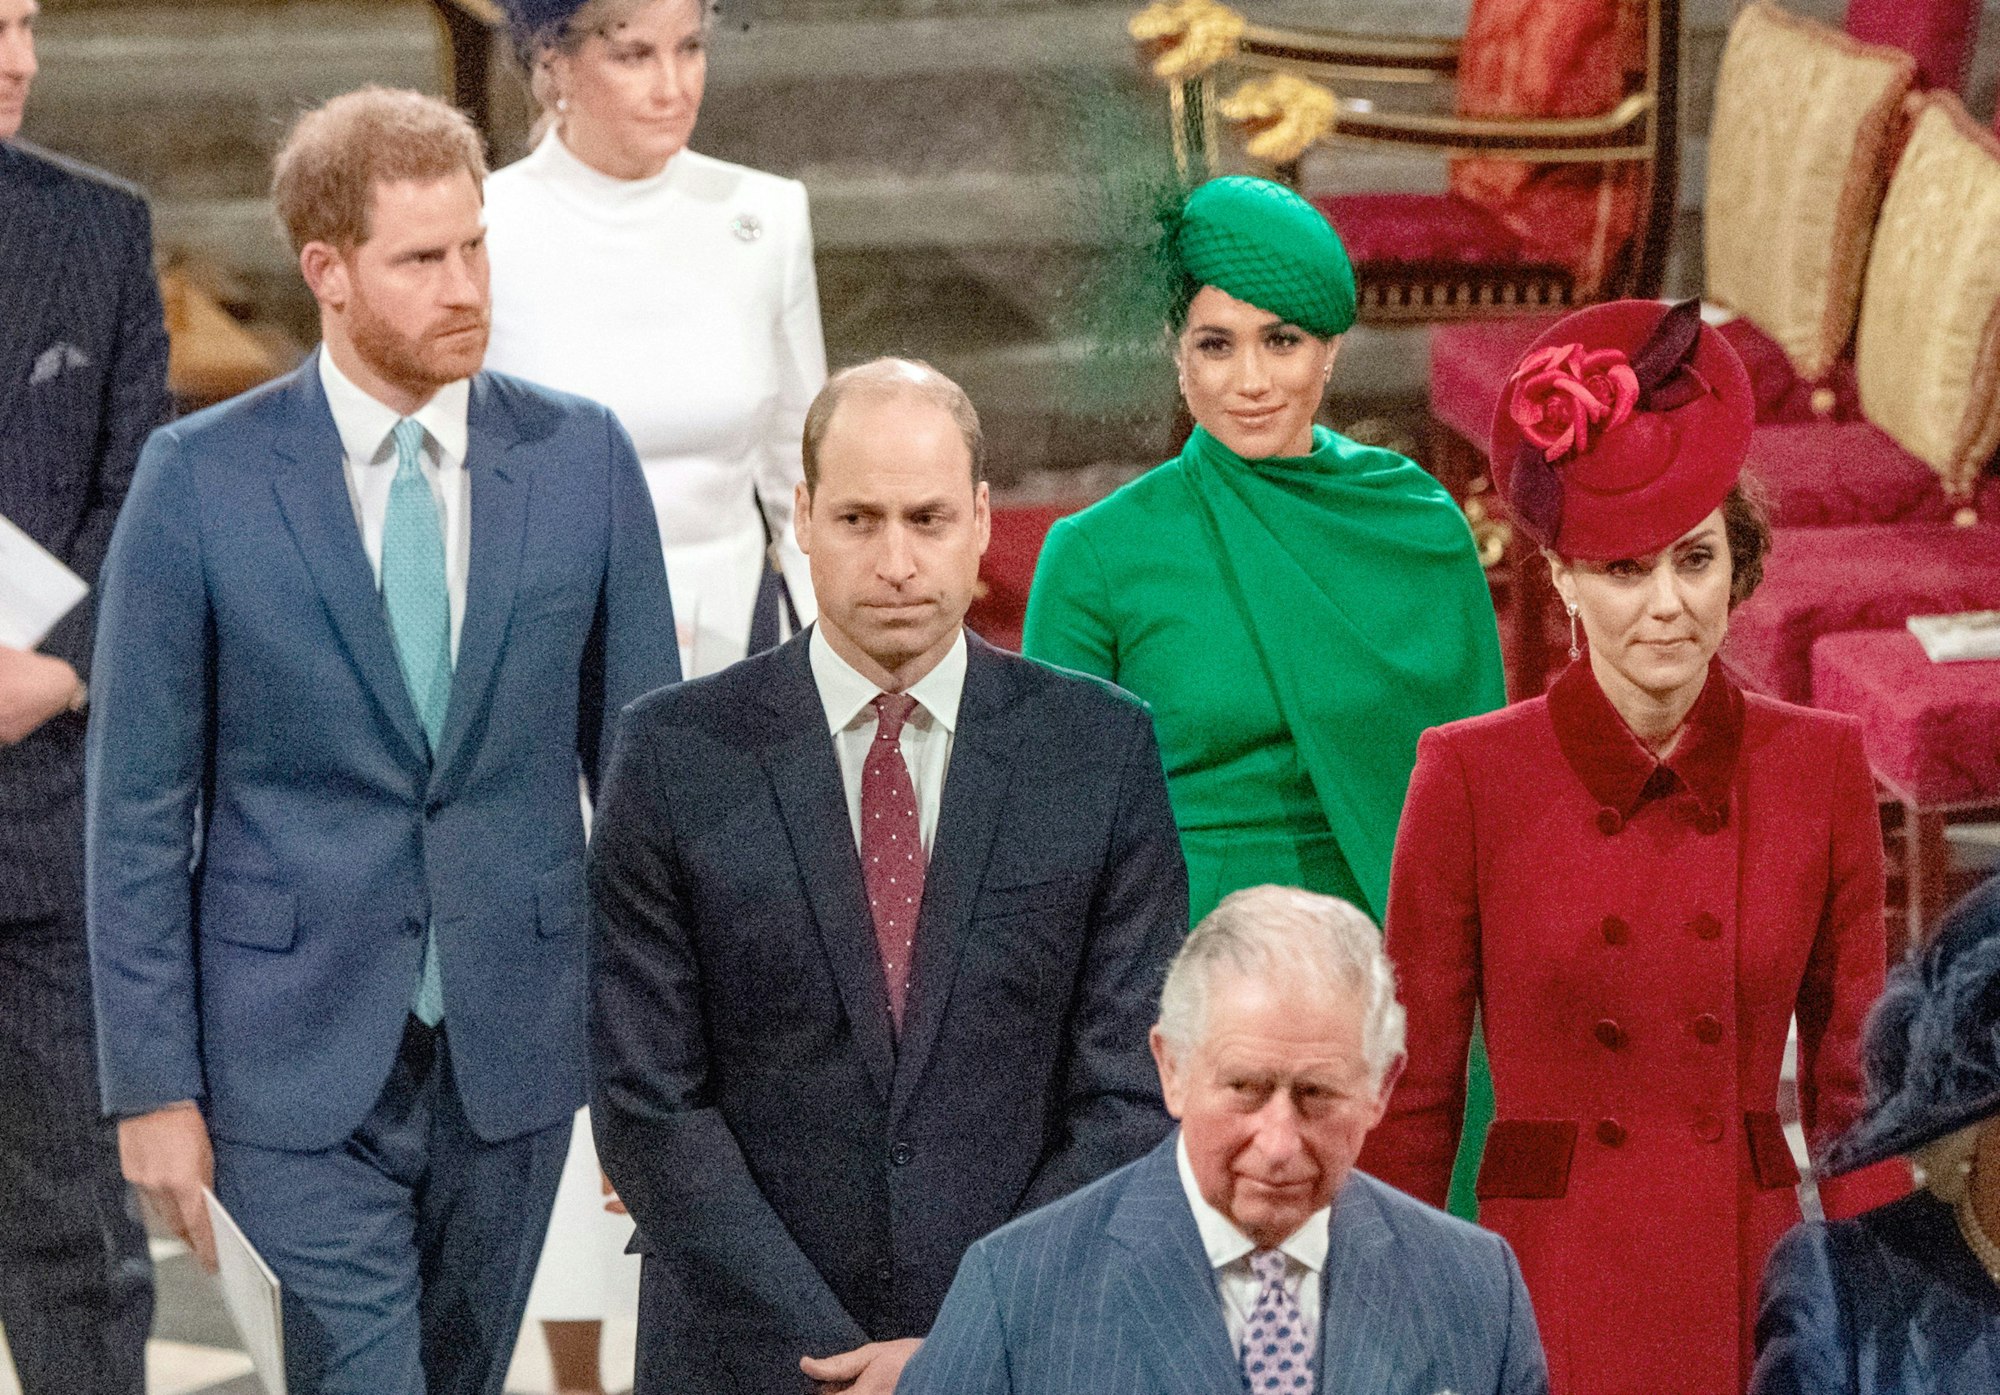 Sie waren die „Fab Four“ des britischen Königshauses: die Prinzen Harry und William mit ihren Ehefrauen Meghan und Kate. Doch das Verhältnis der Brüder ist zerrüttet, sehr zum Bedauern von Vater Charles (vorne) hier am 9. März 2020 in Westminster Abbey nach dem Gottesdienst anlässlich des Commonwealth-Tages.